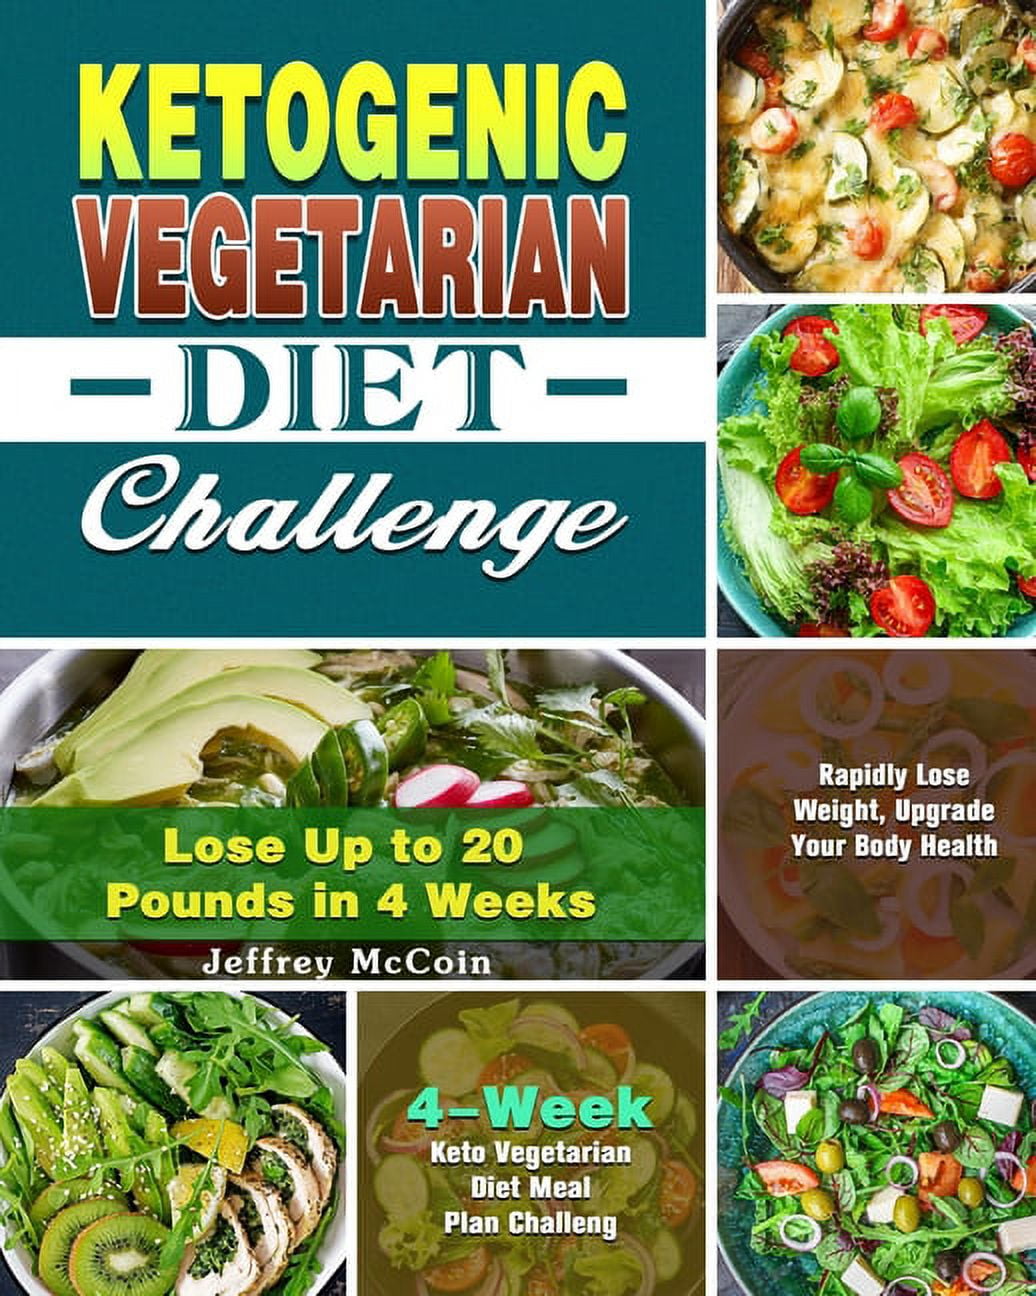 Ketogenic Vegetarian Diet Challenge: 4-Week Keto Vegetarian Diet Meal ...